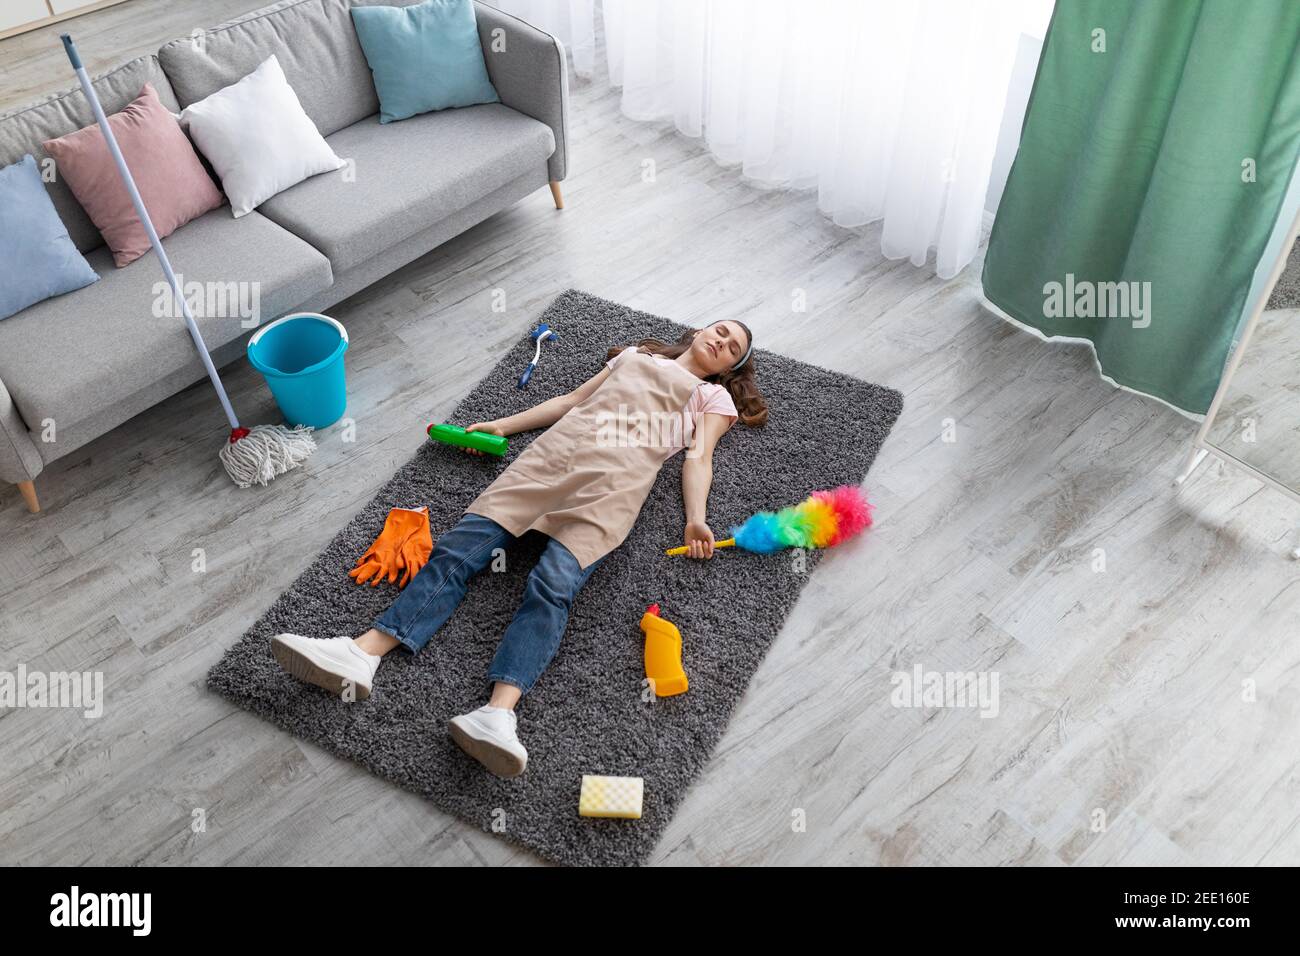 Au-dessus de la vue de la jeune femme dormant sur le sol dans la salle de séjour, entouré de fournitures de nettoyage, épuisé des travaux ménagers Banque D'Images